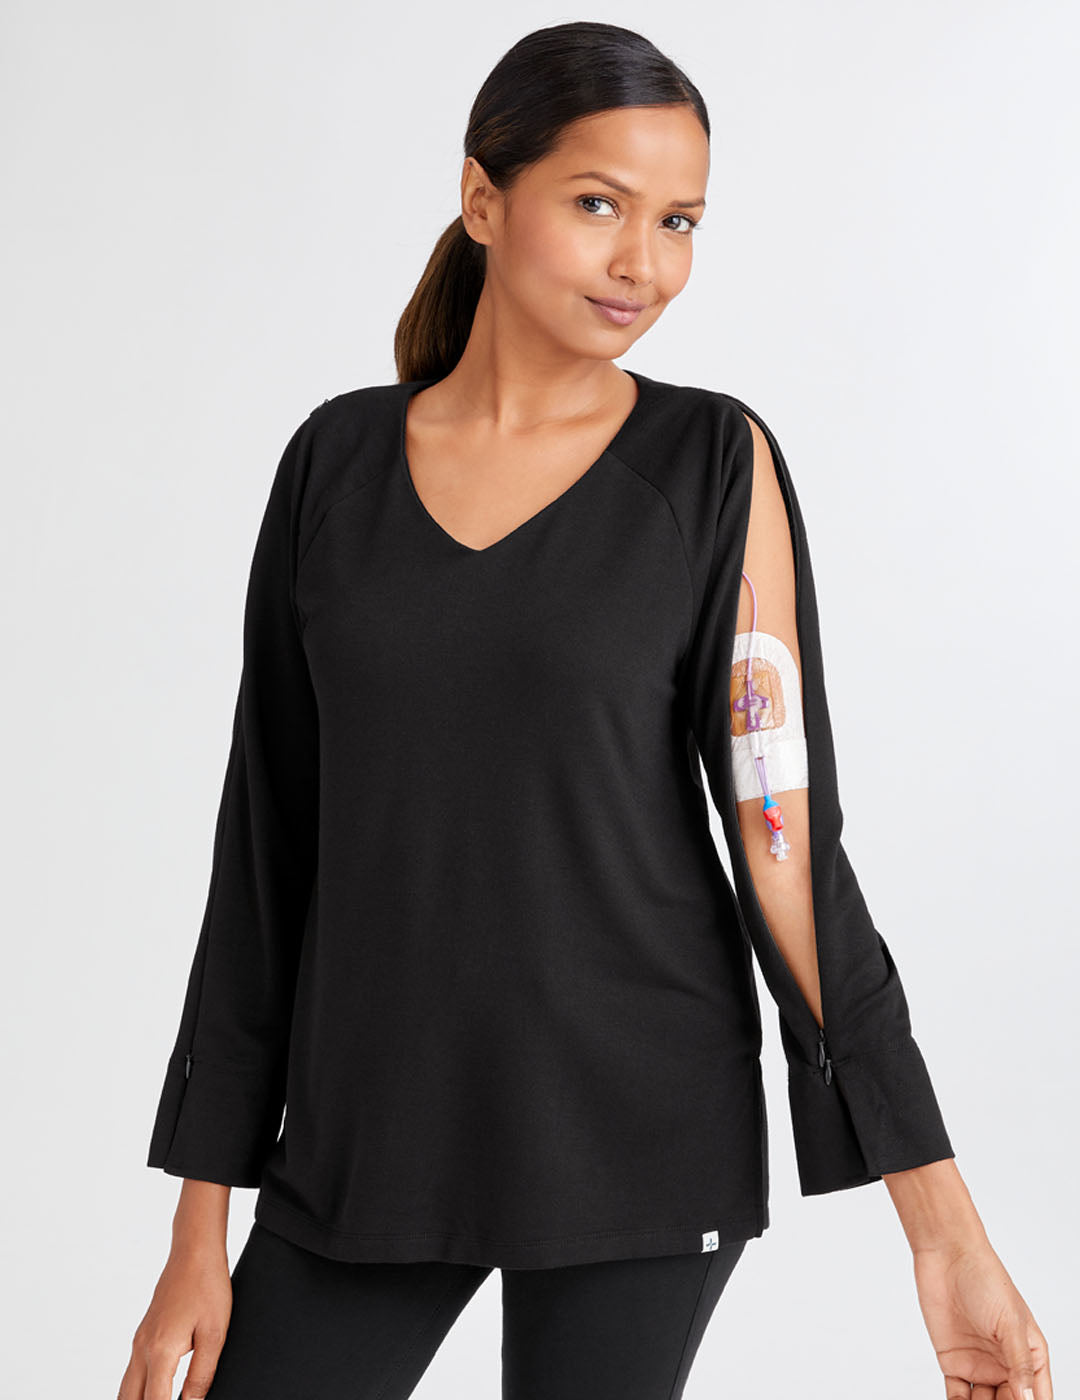 Women&#39;s Arm Access Shirt